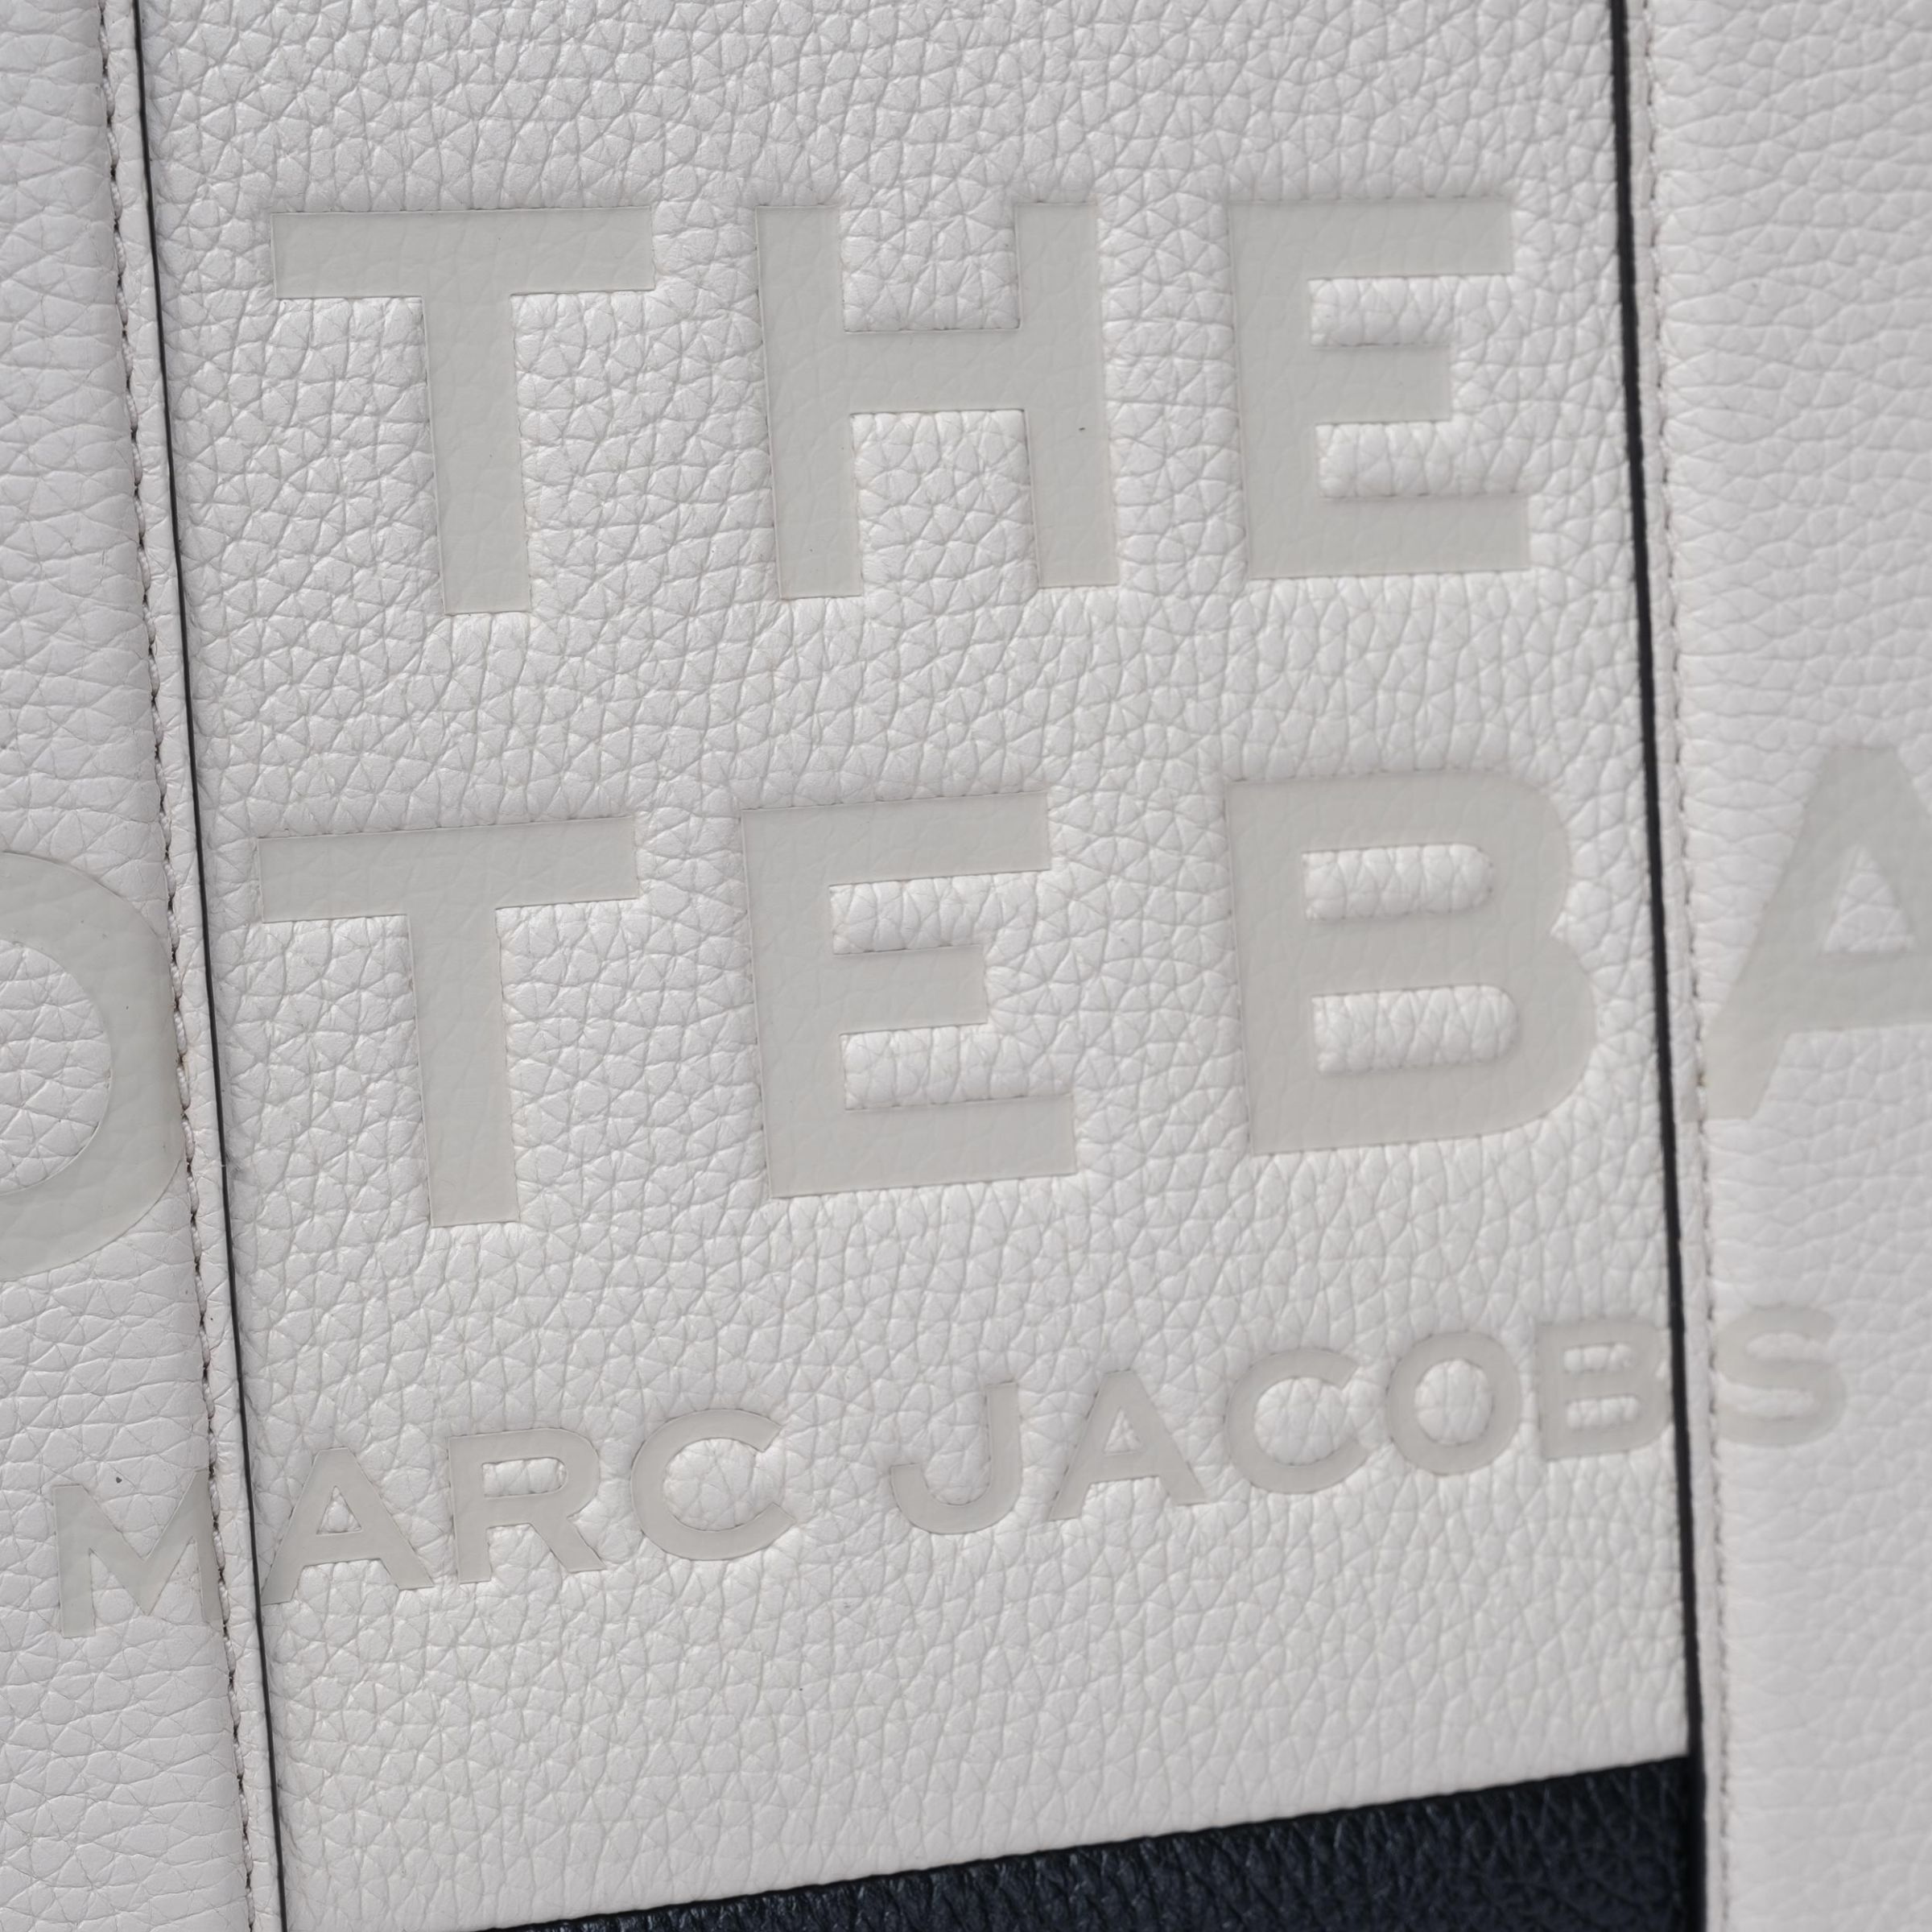 Сумка Marc Jacobs Colorblock Medium Tote біло-чорна